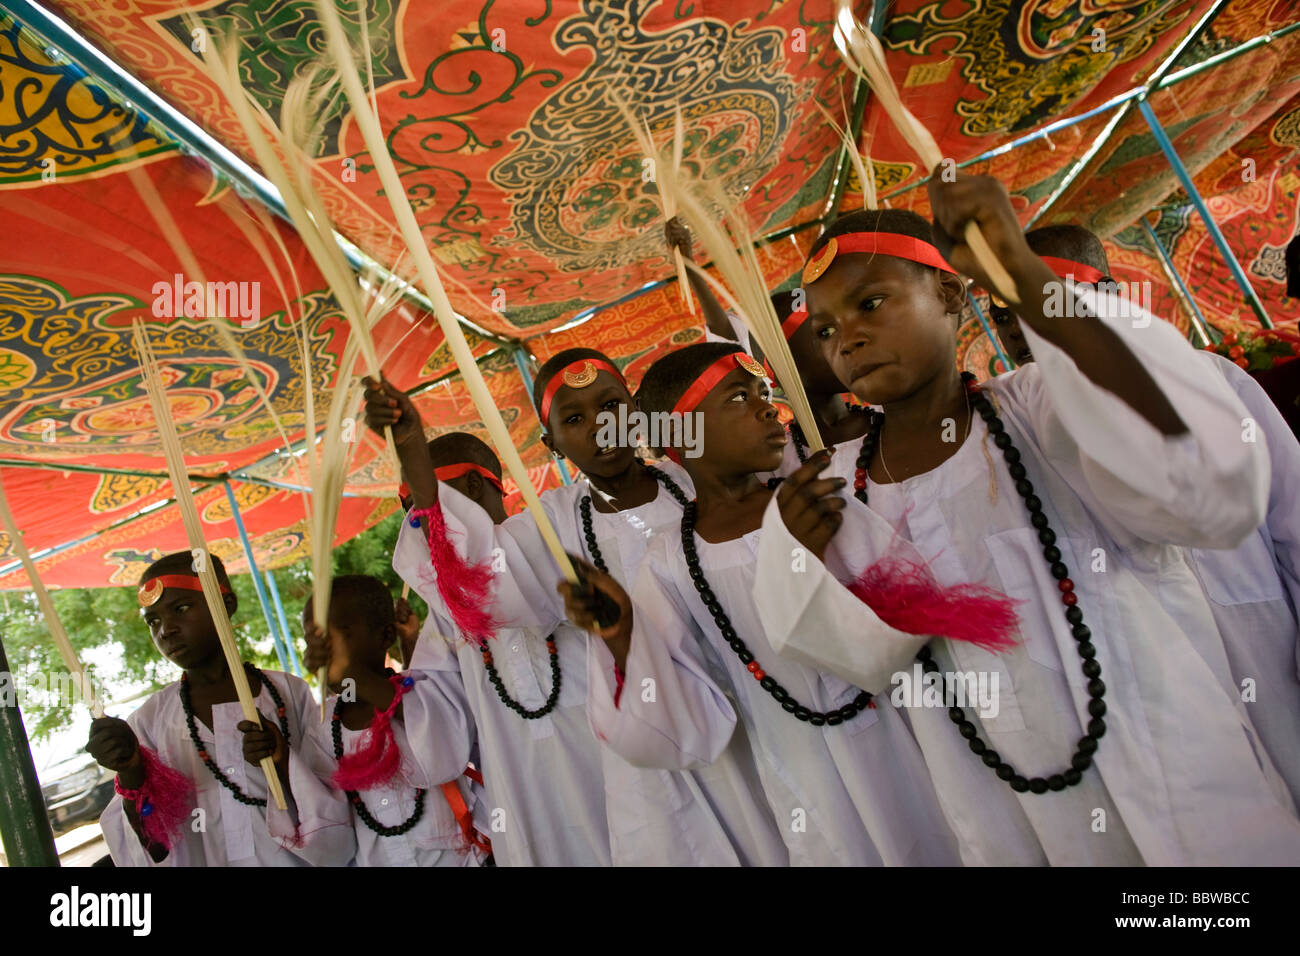 I ragazzi di età compresa tra i 8 e 13 si riuniscono per celebrare un rito sudanese di passaggio, la circoncisione maschile. Foto Stock